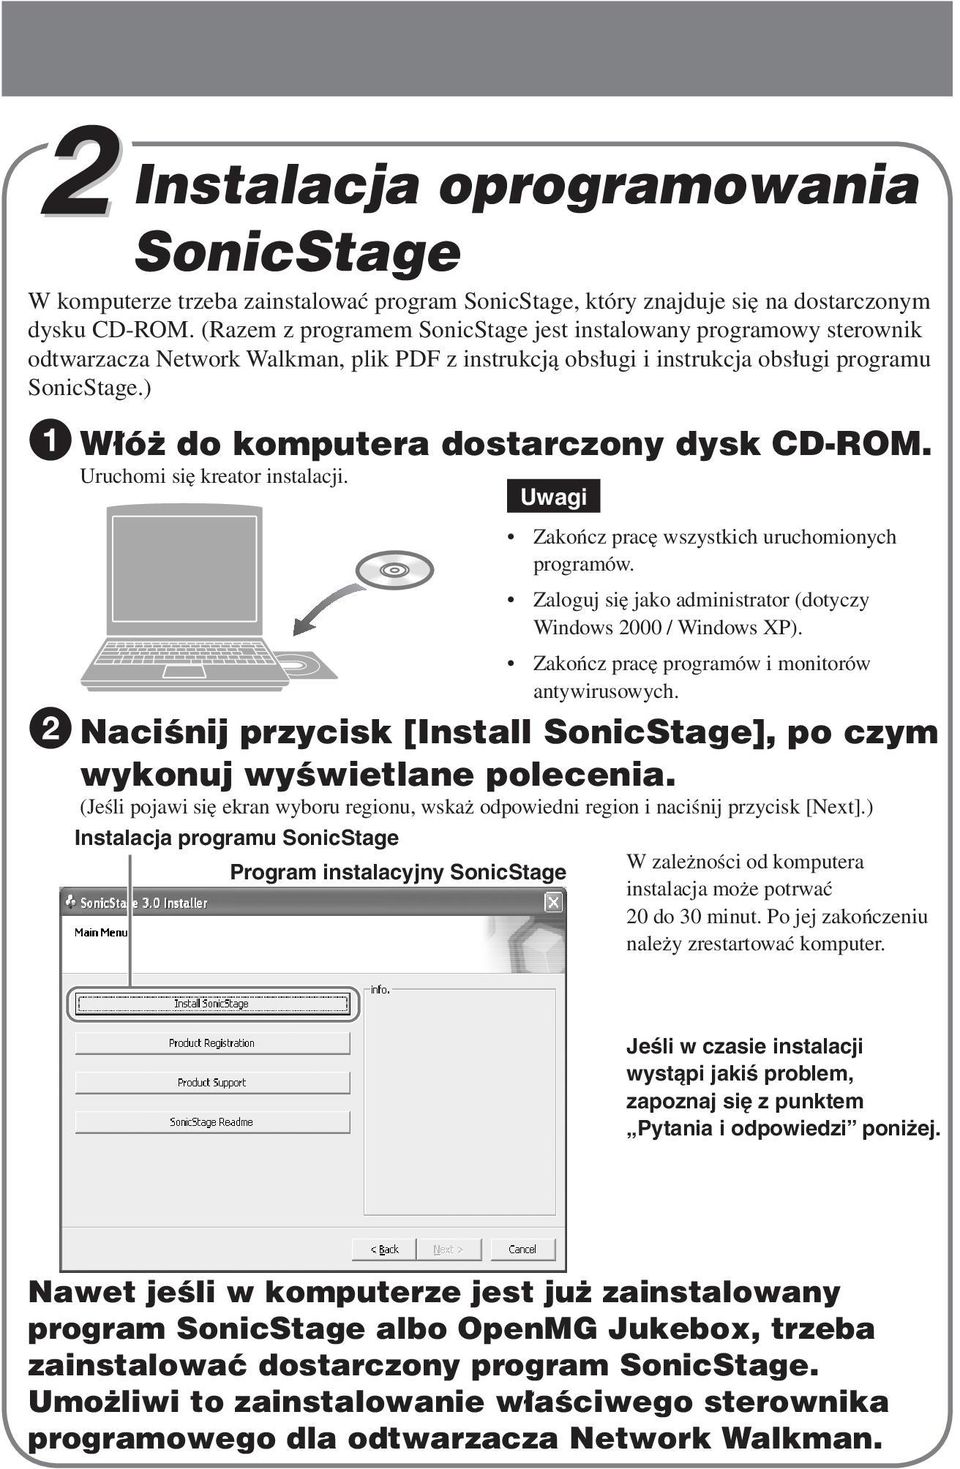 ) 1 Włóż do komputera dostarczony dysk CD-ROM. Uruchomi się kreator instalacji. 2 Naciśnij przycisk [Install SonicStage], po czym wykonuj wyświetlane polecenia.